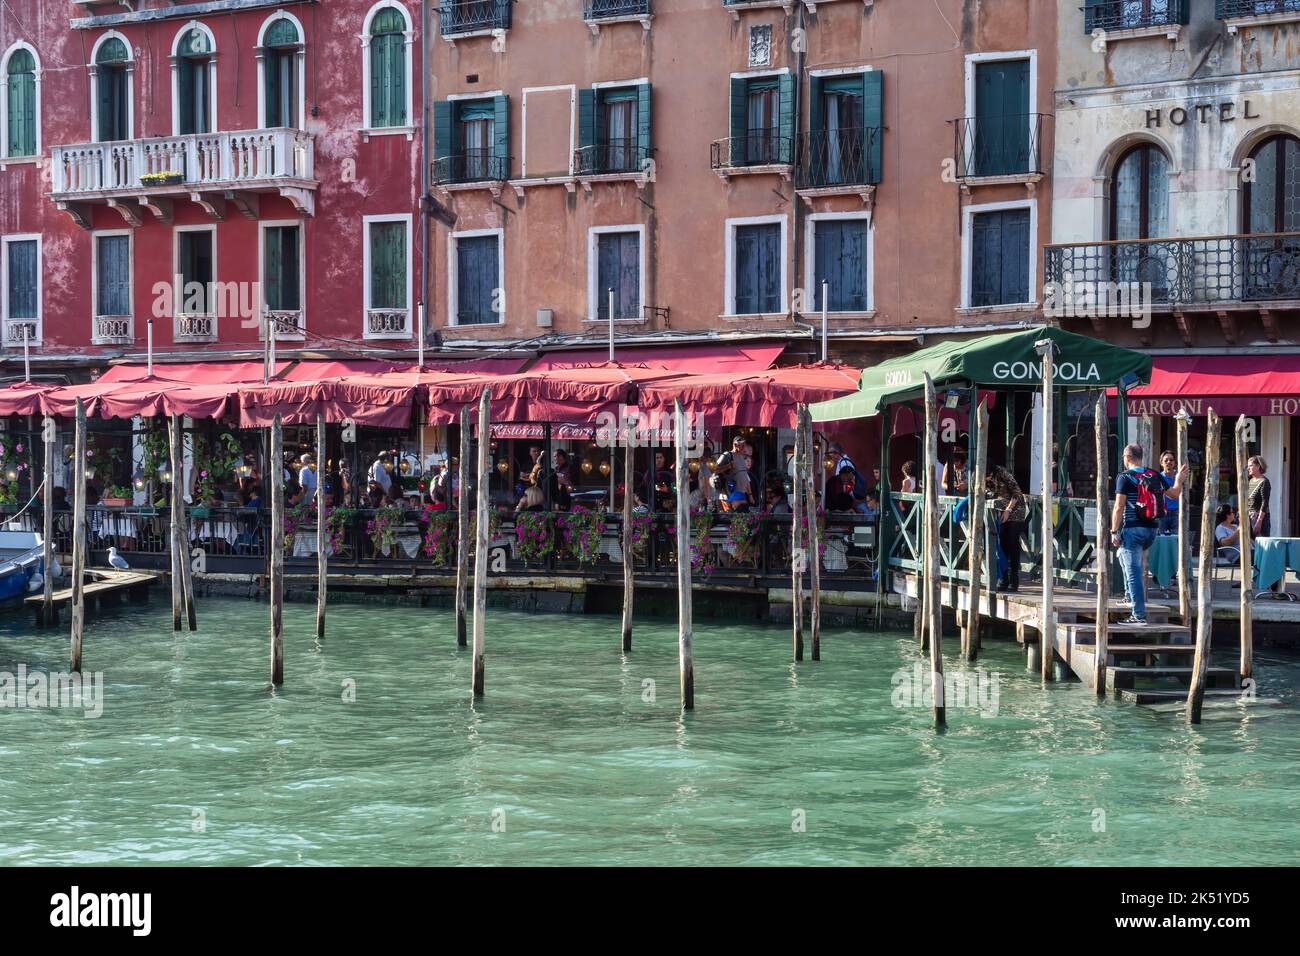 VENISE, ITALIE - OCTOBRE 12 : station de télécabine sur le Grand Canal de Venise sur 12 octobre 2014. Personnes non identifiées Banque D'Images